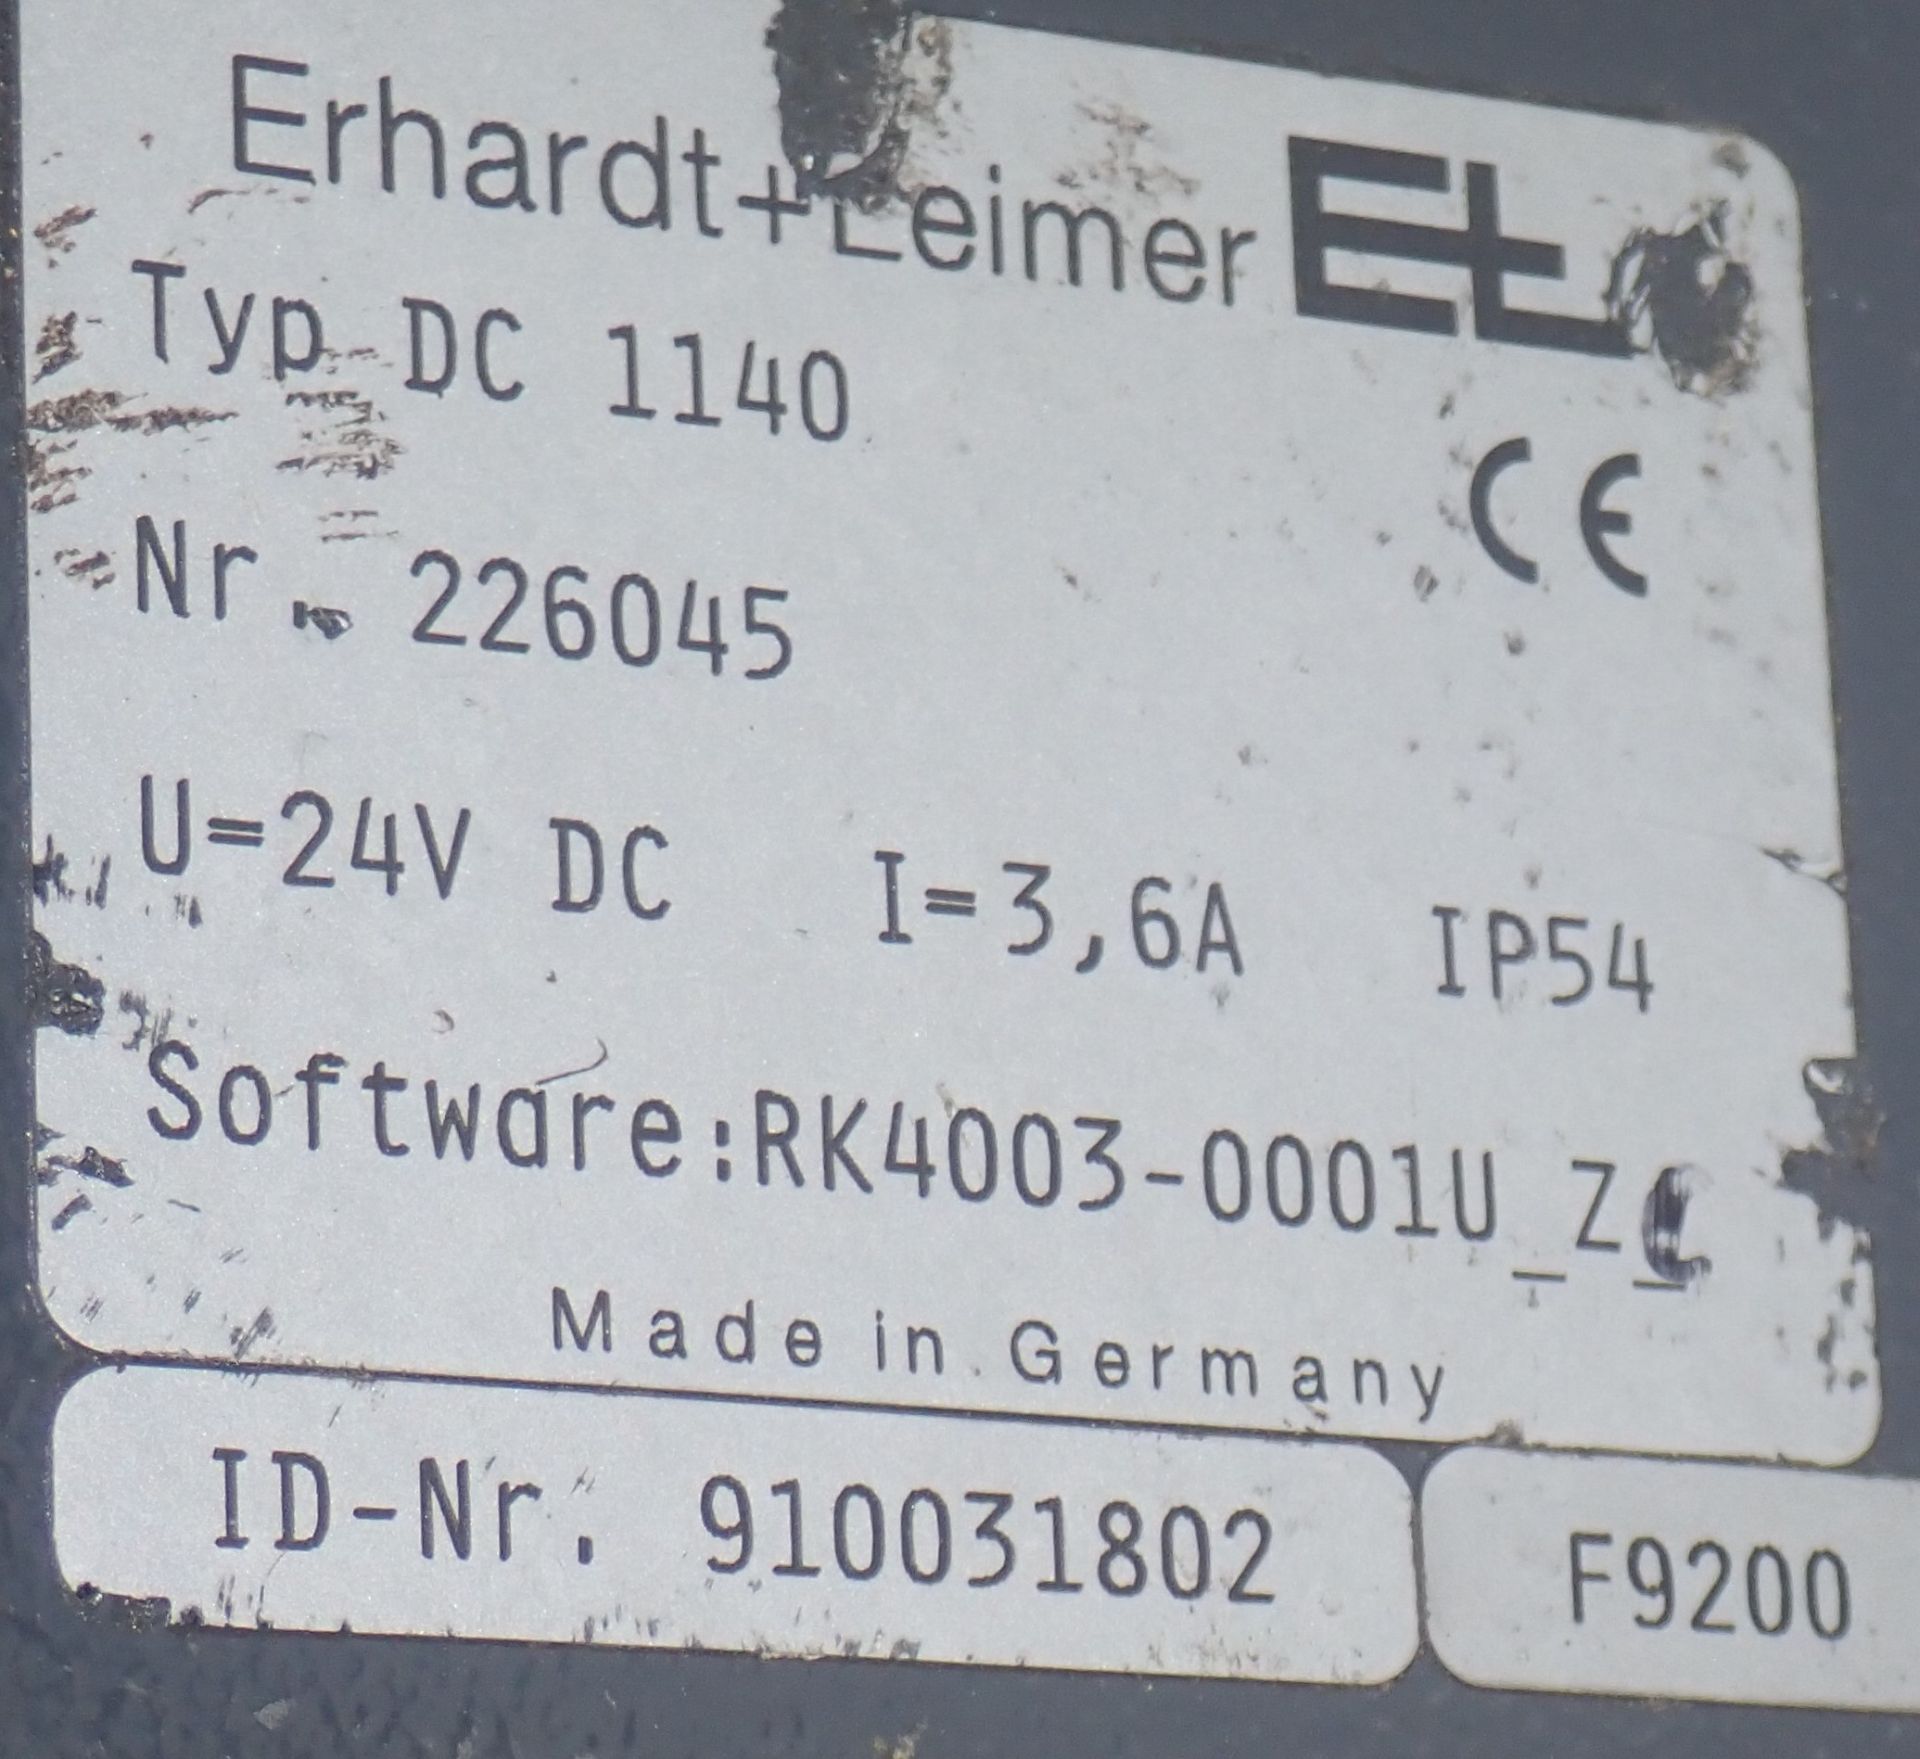 Erhardt & Leimer EL DC 1140 ++++ - Image 3 of 5